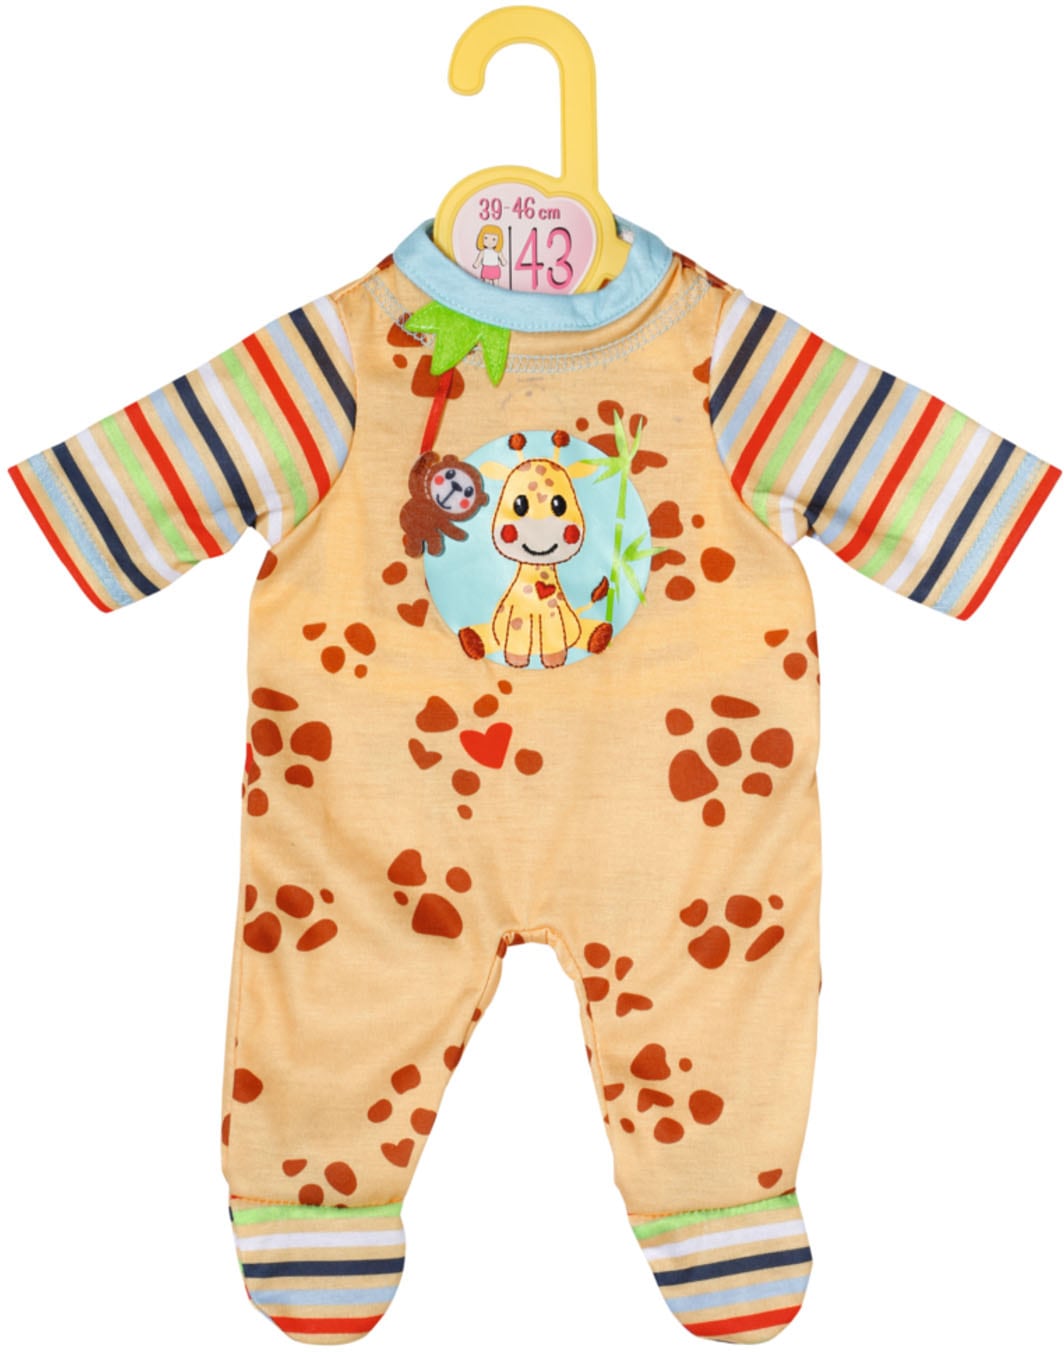 Zapf Creation® Puppenkleidung »Dolly Moda, Strampler mit Giraffe, 43 cm« von Zapf Creation®